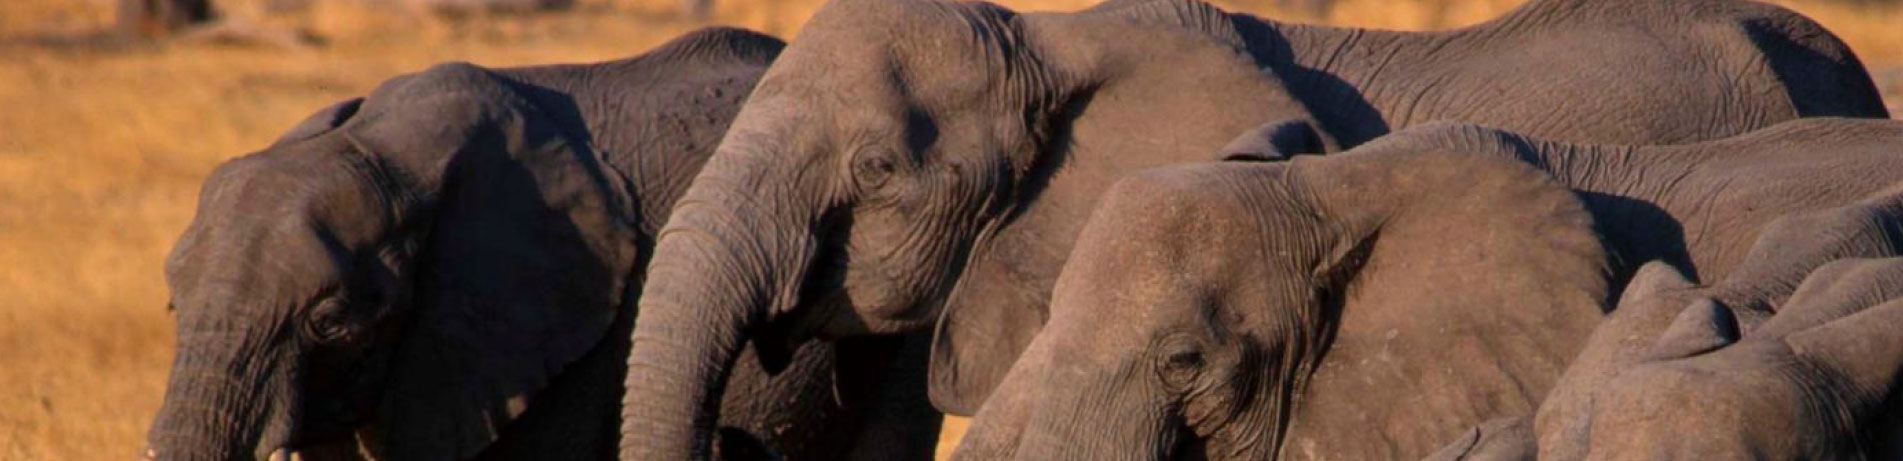 Herd of elephants in the wild in Botswana